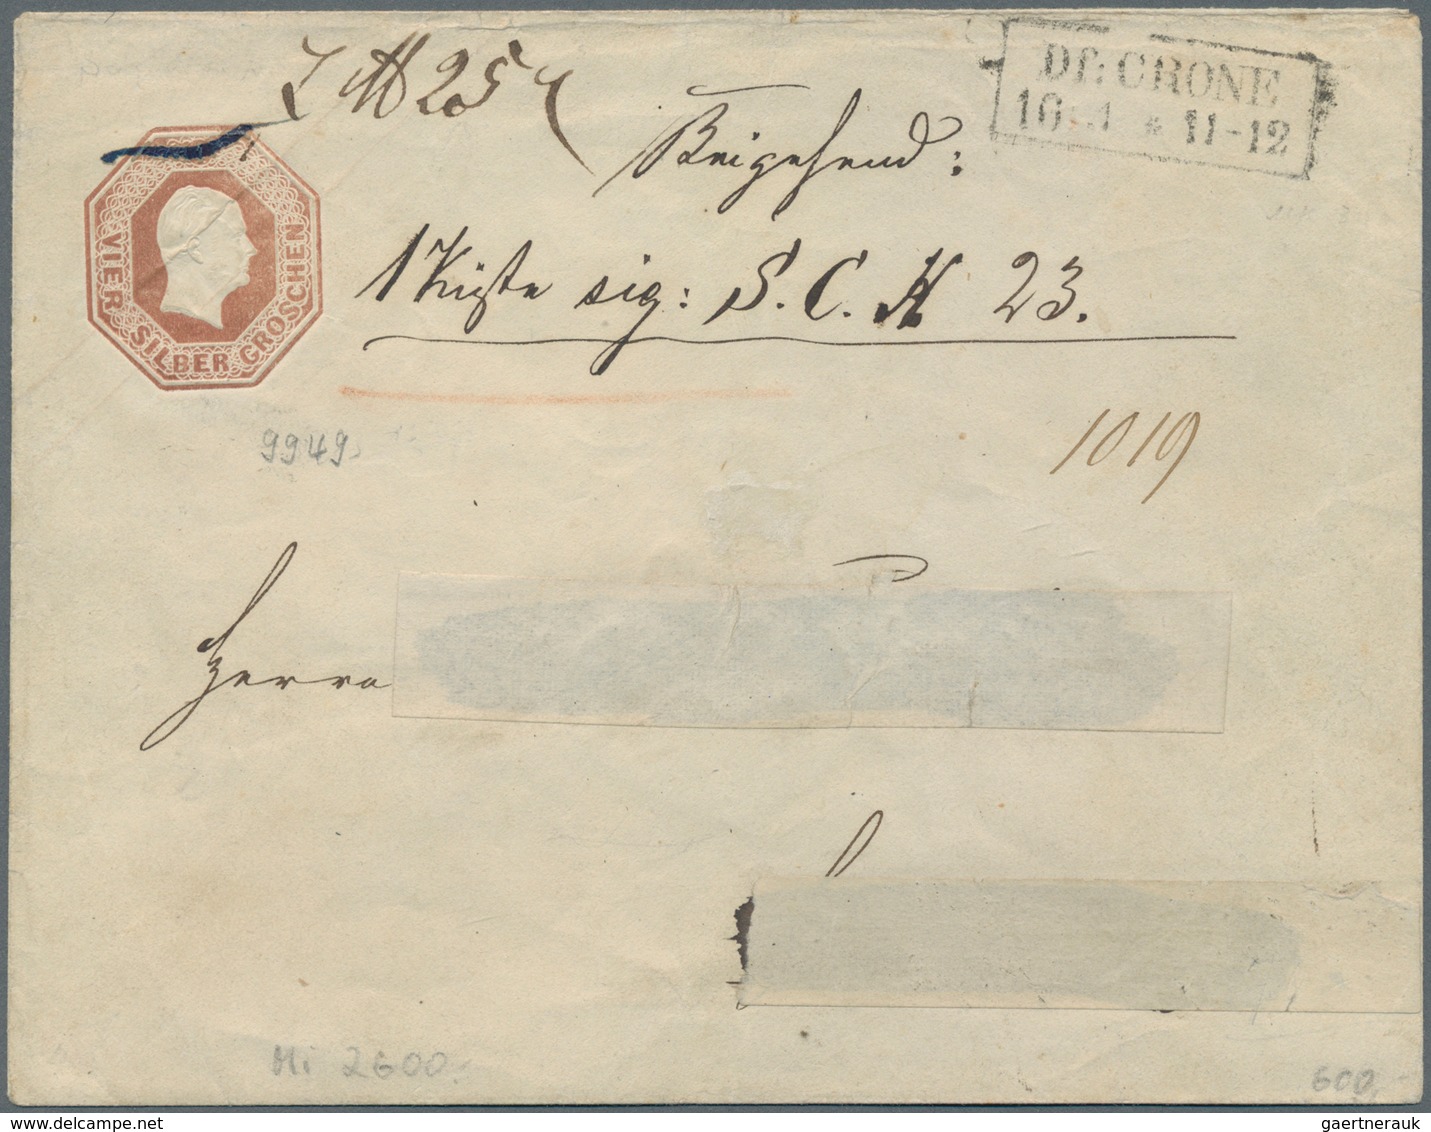 Preußen - Marken und Briefe: 1850/1867, schöne Sammlung, auf Blanko-Blättern aufgezogen, mit dekorat